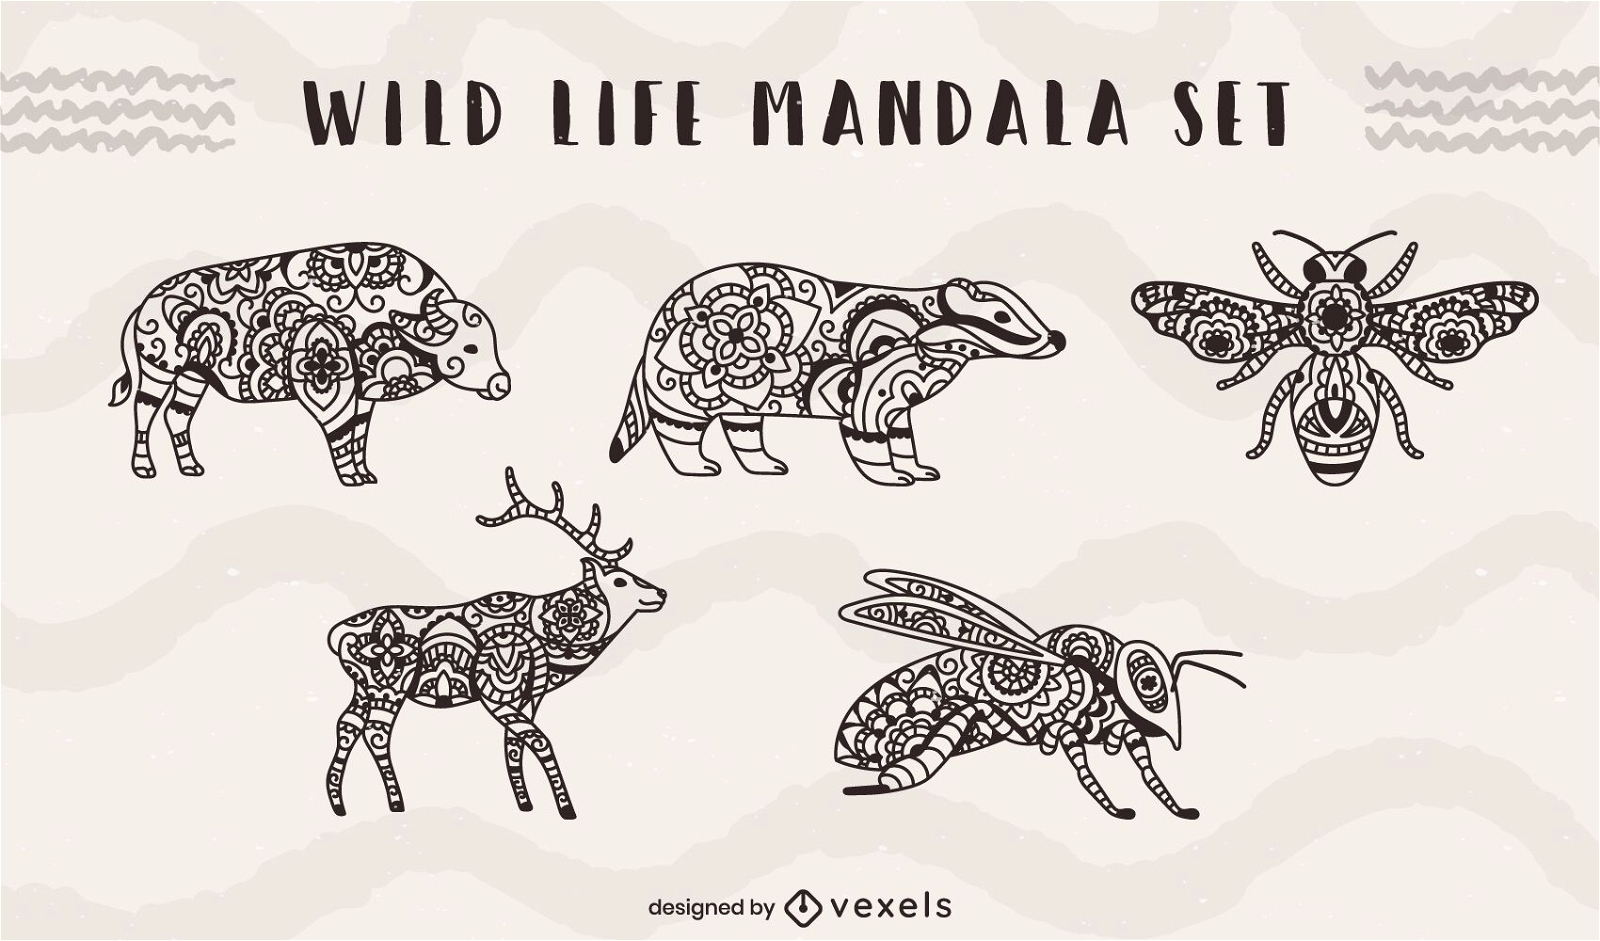 Conjunto de mandala de animales e insectos de vida salvaje.